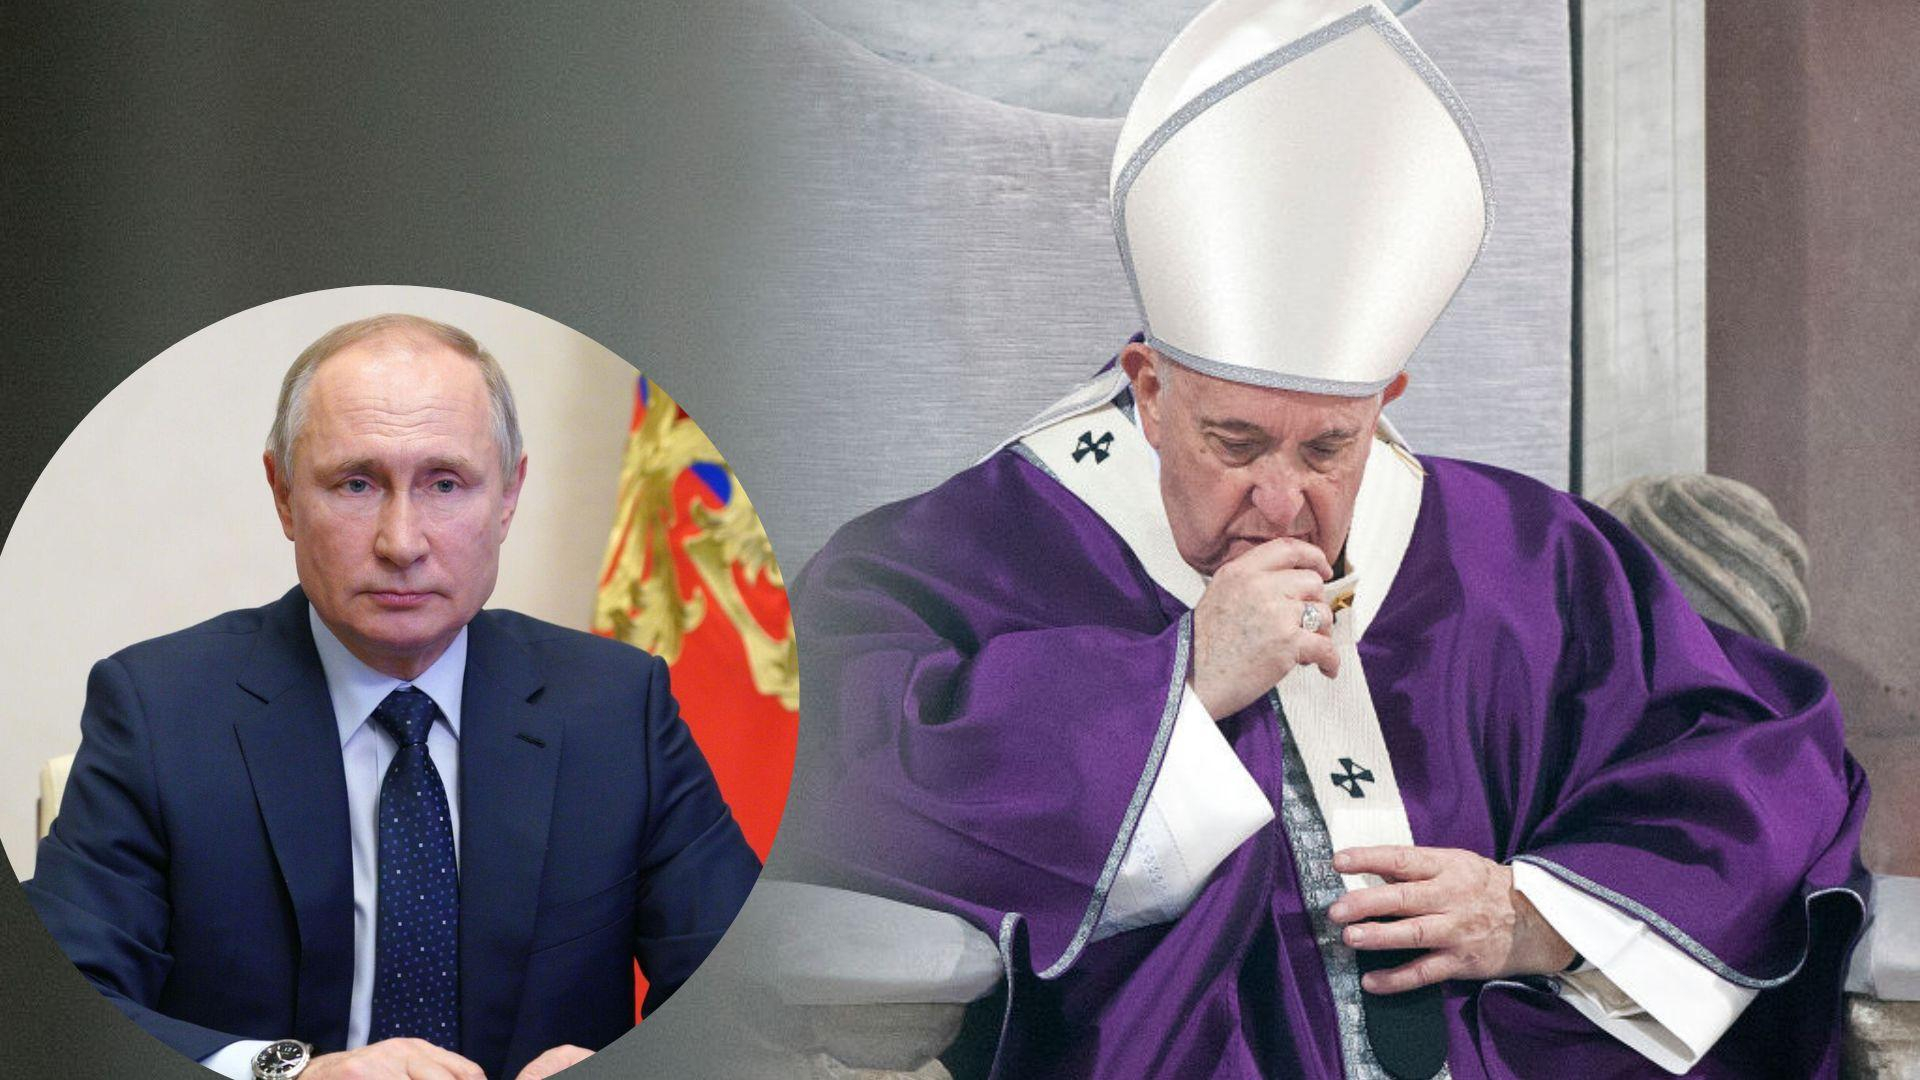 Папа Римский заявил, что просил о встрече с Путиным в Москве, но ответа не получил